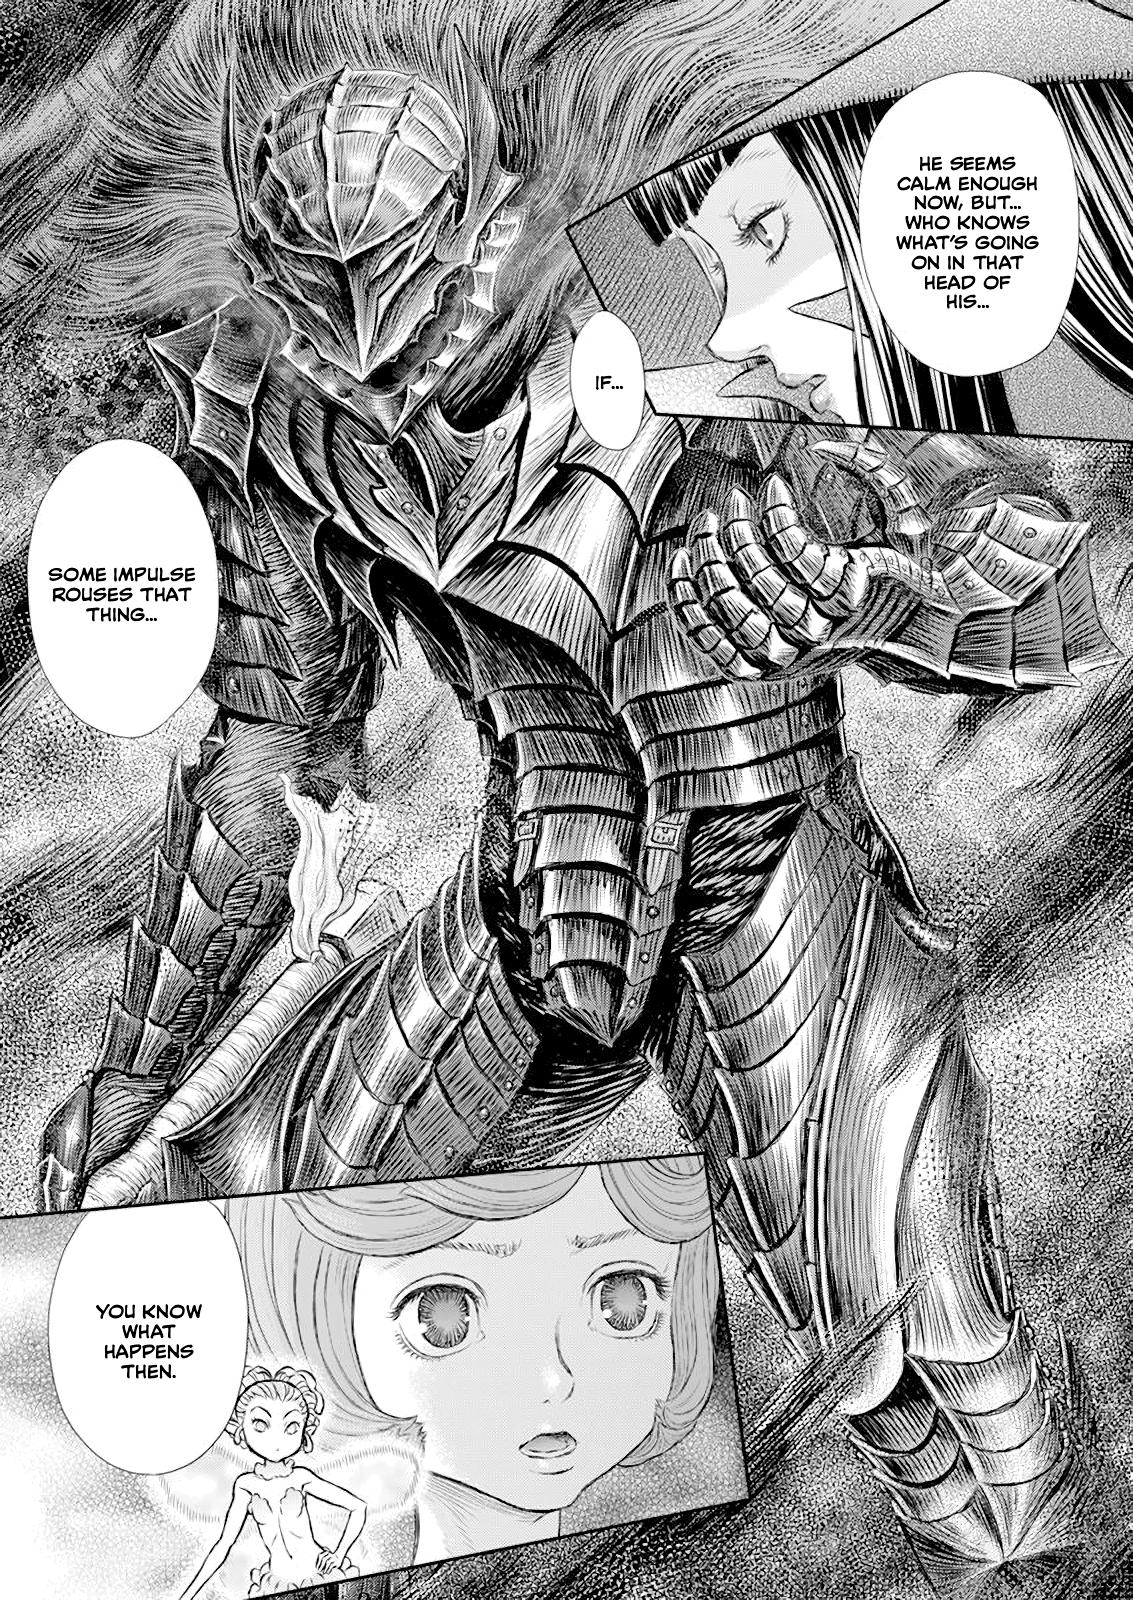 Berserk Manga Chapter 370 image 10